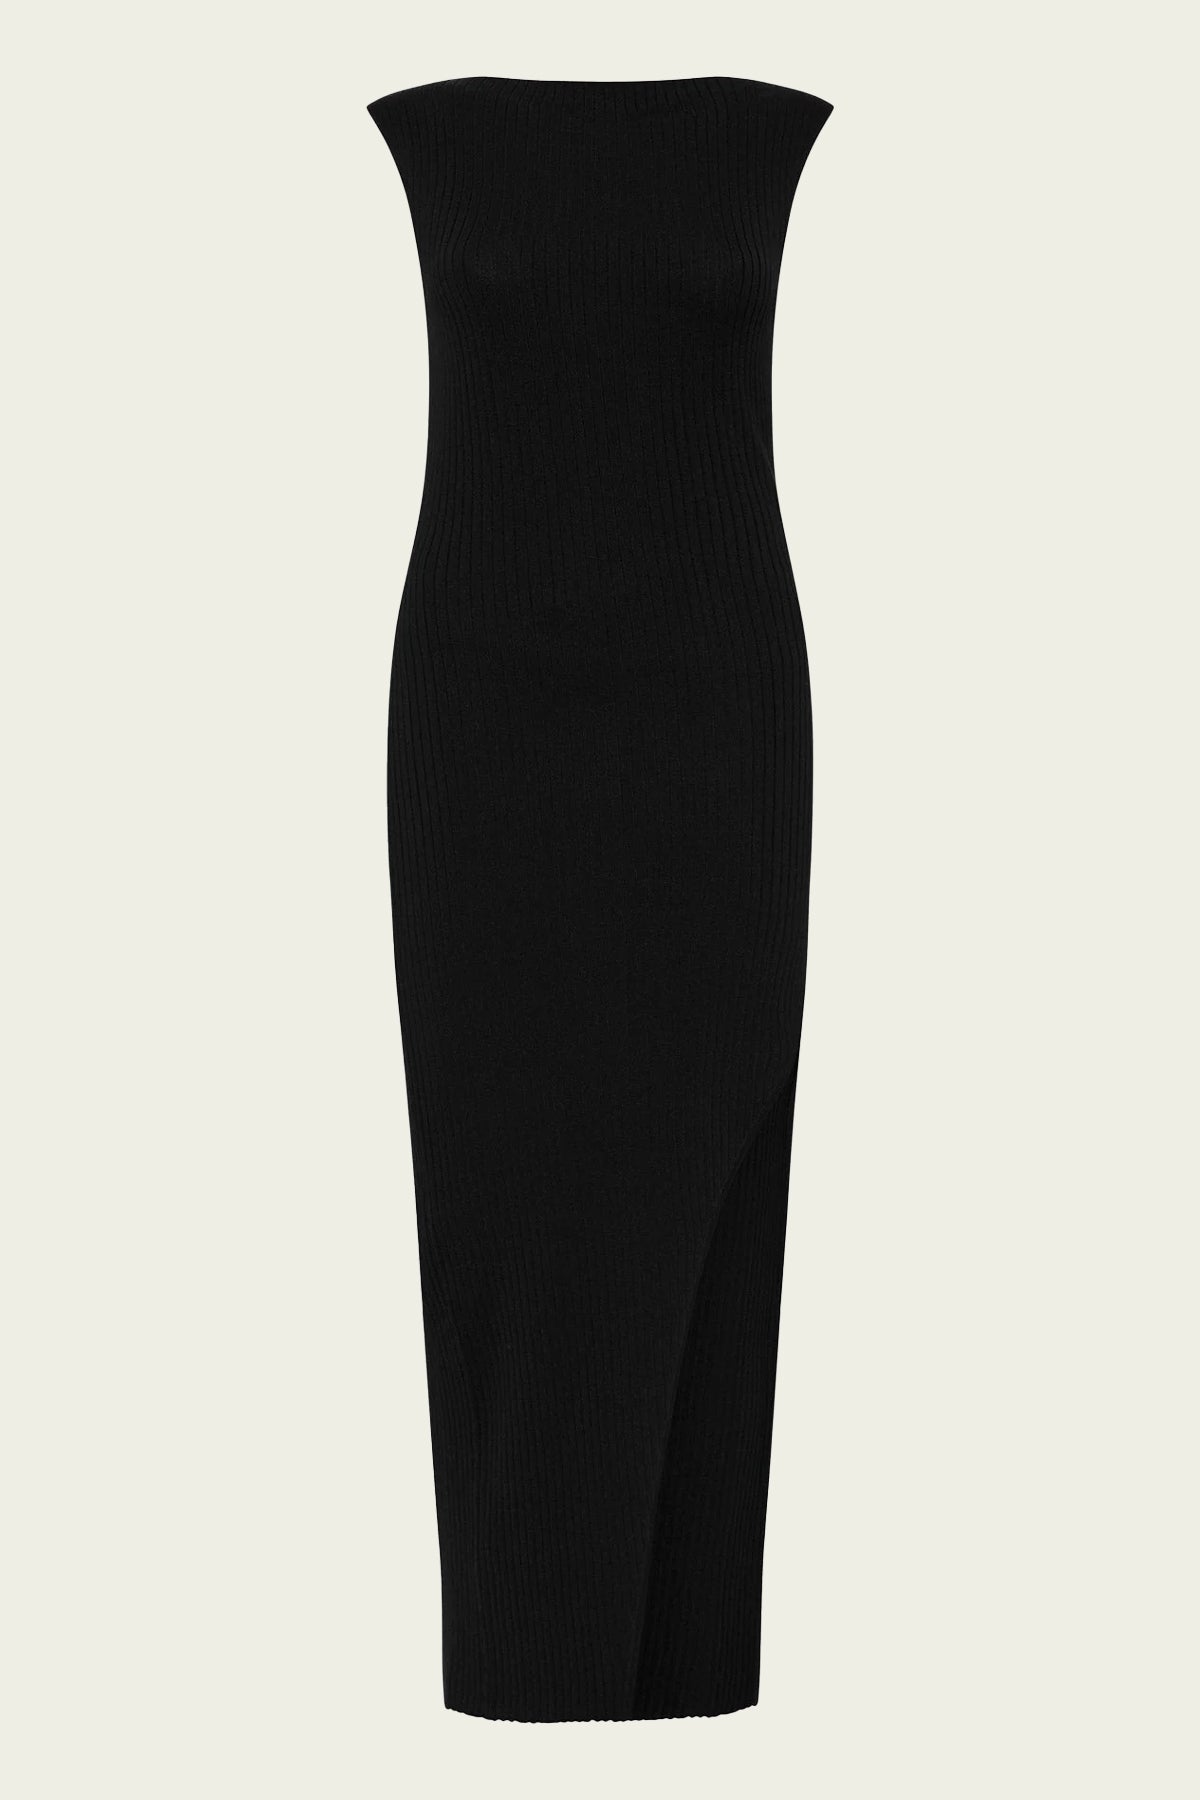 Cut Away Knit Dress in Black - shop-olivia.com